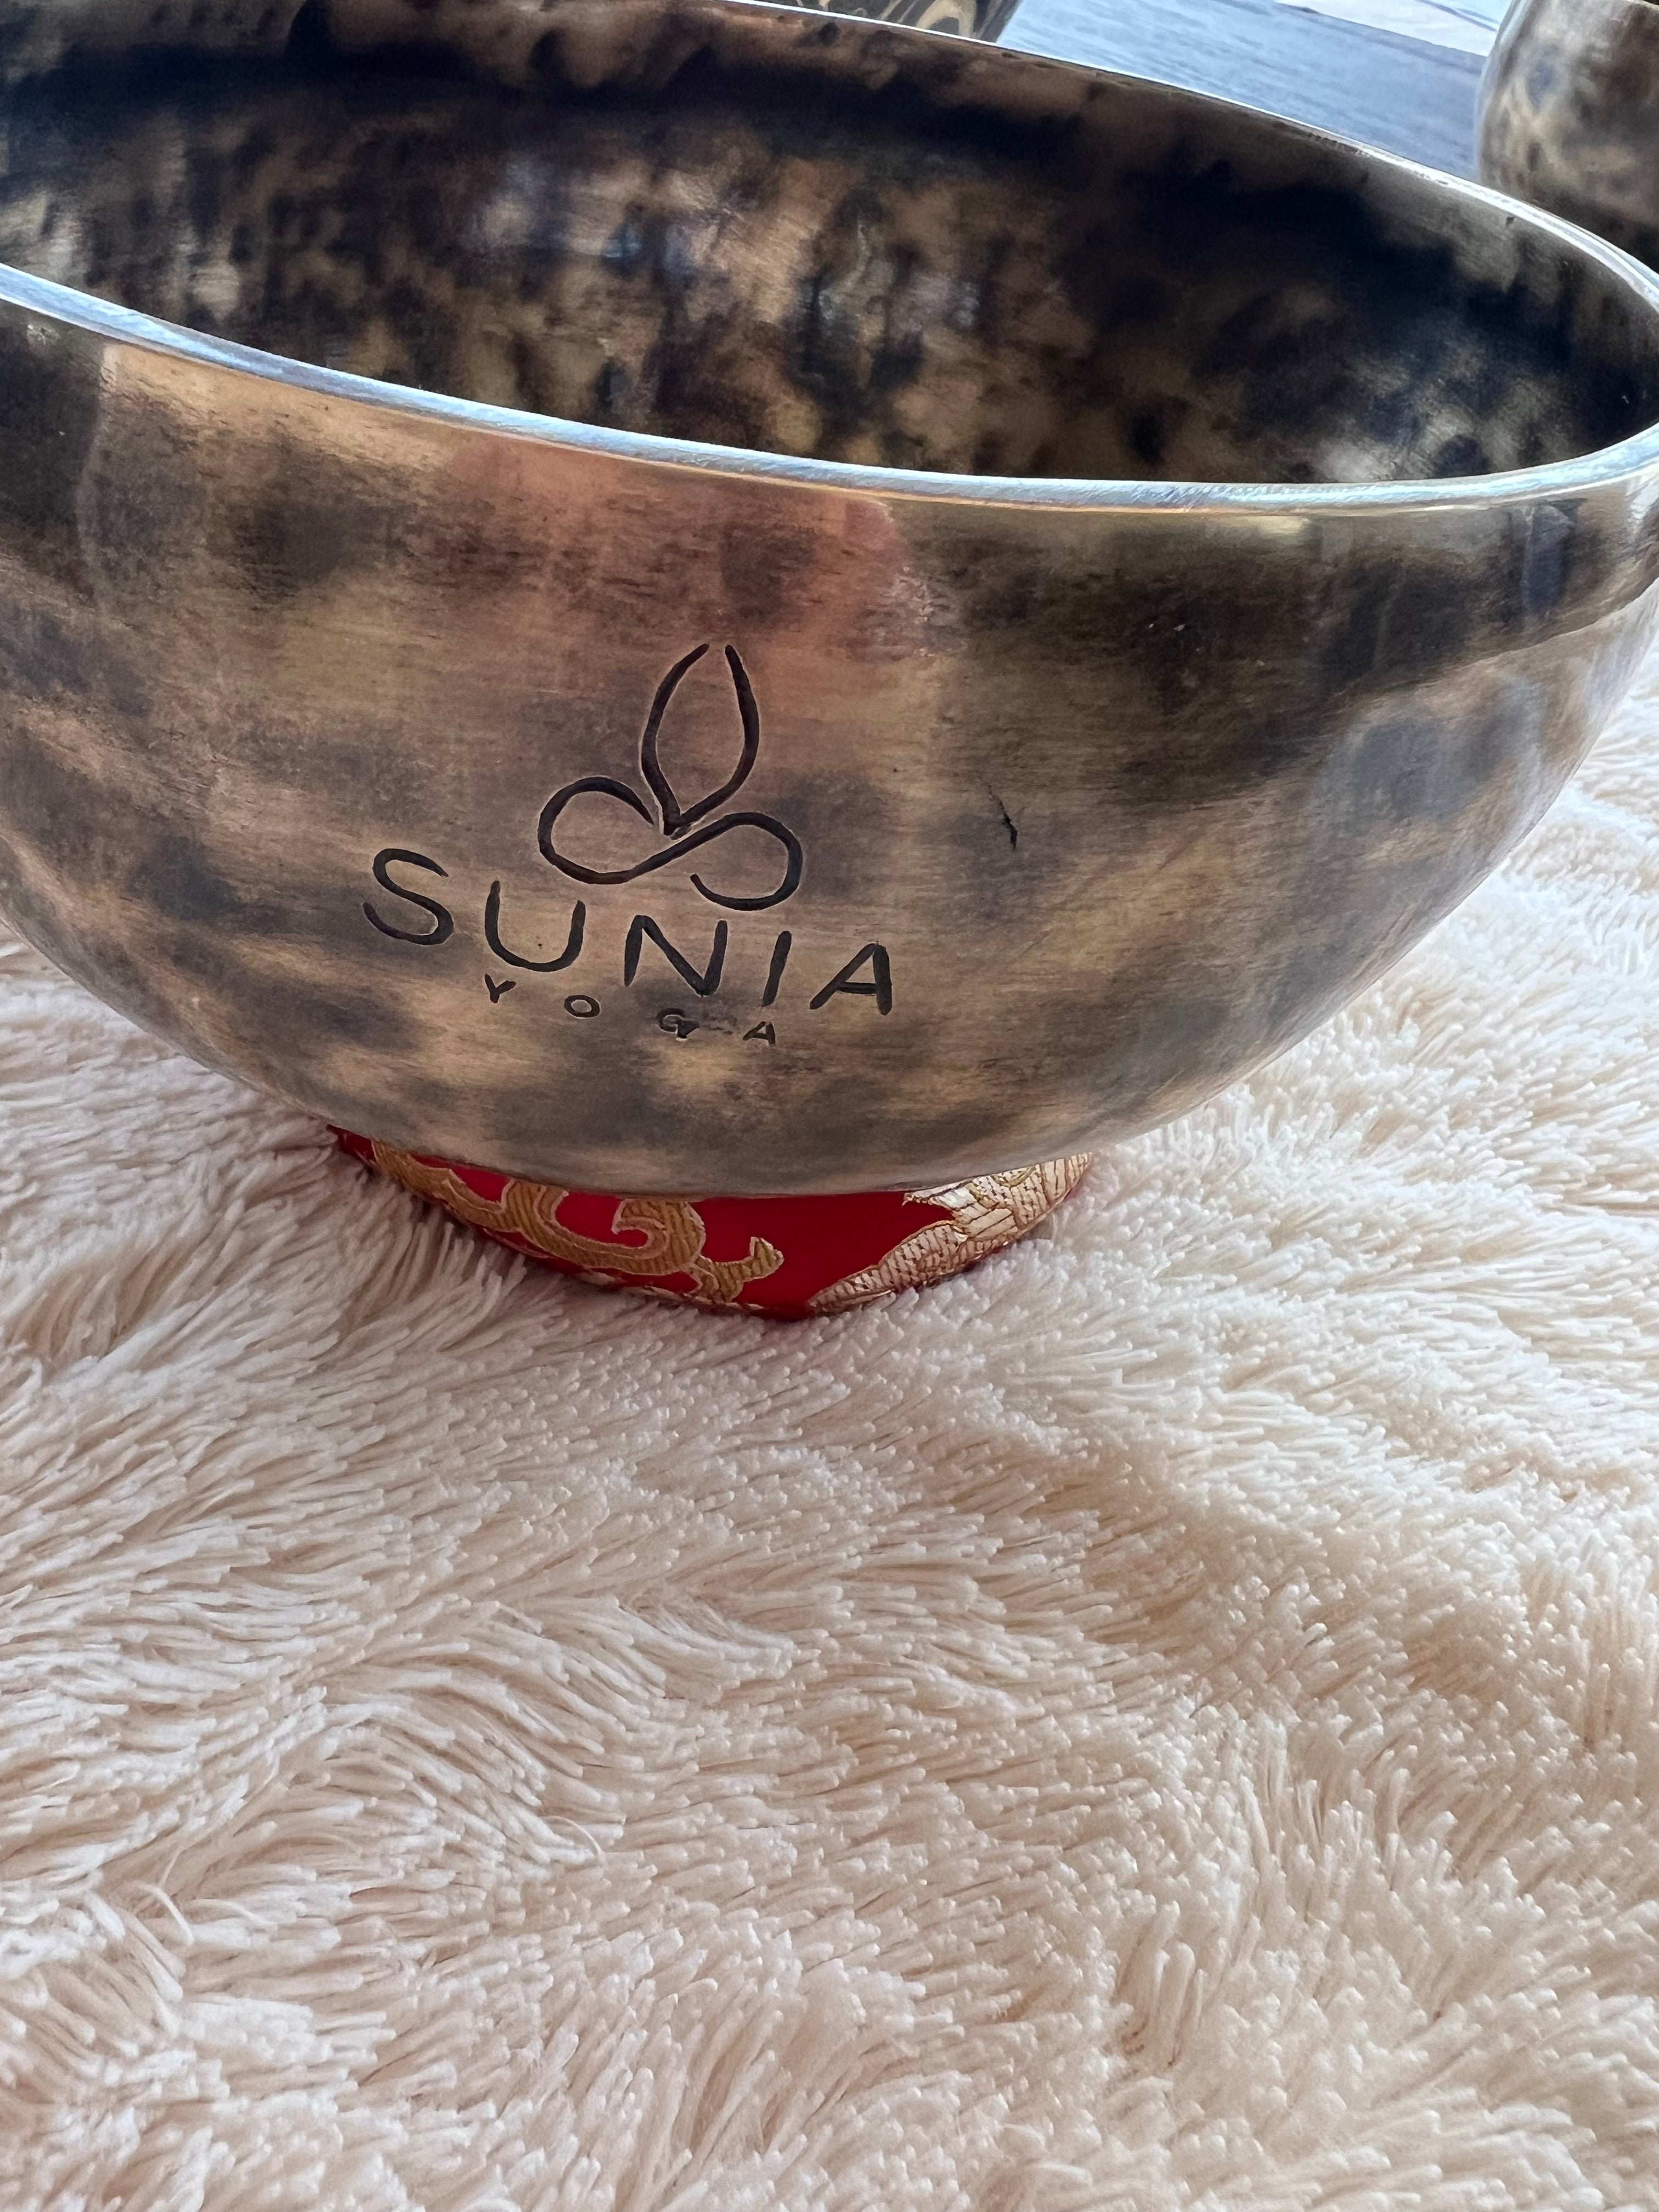 Sunia Yoga Limited Edition Singing Bowls!